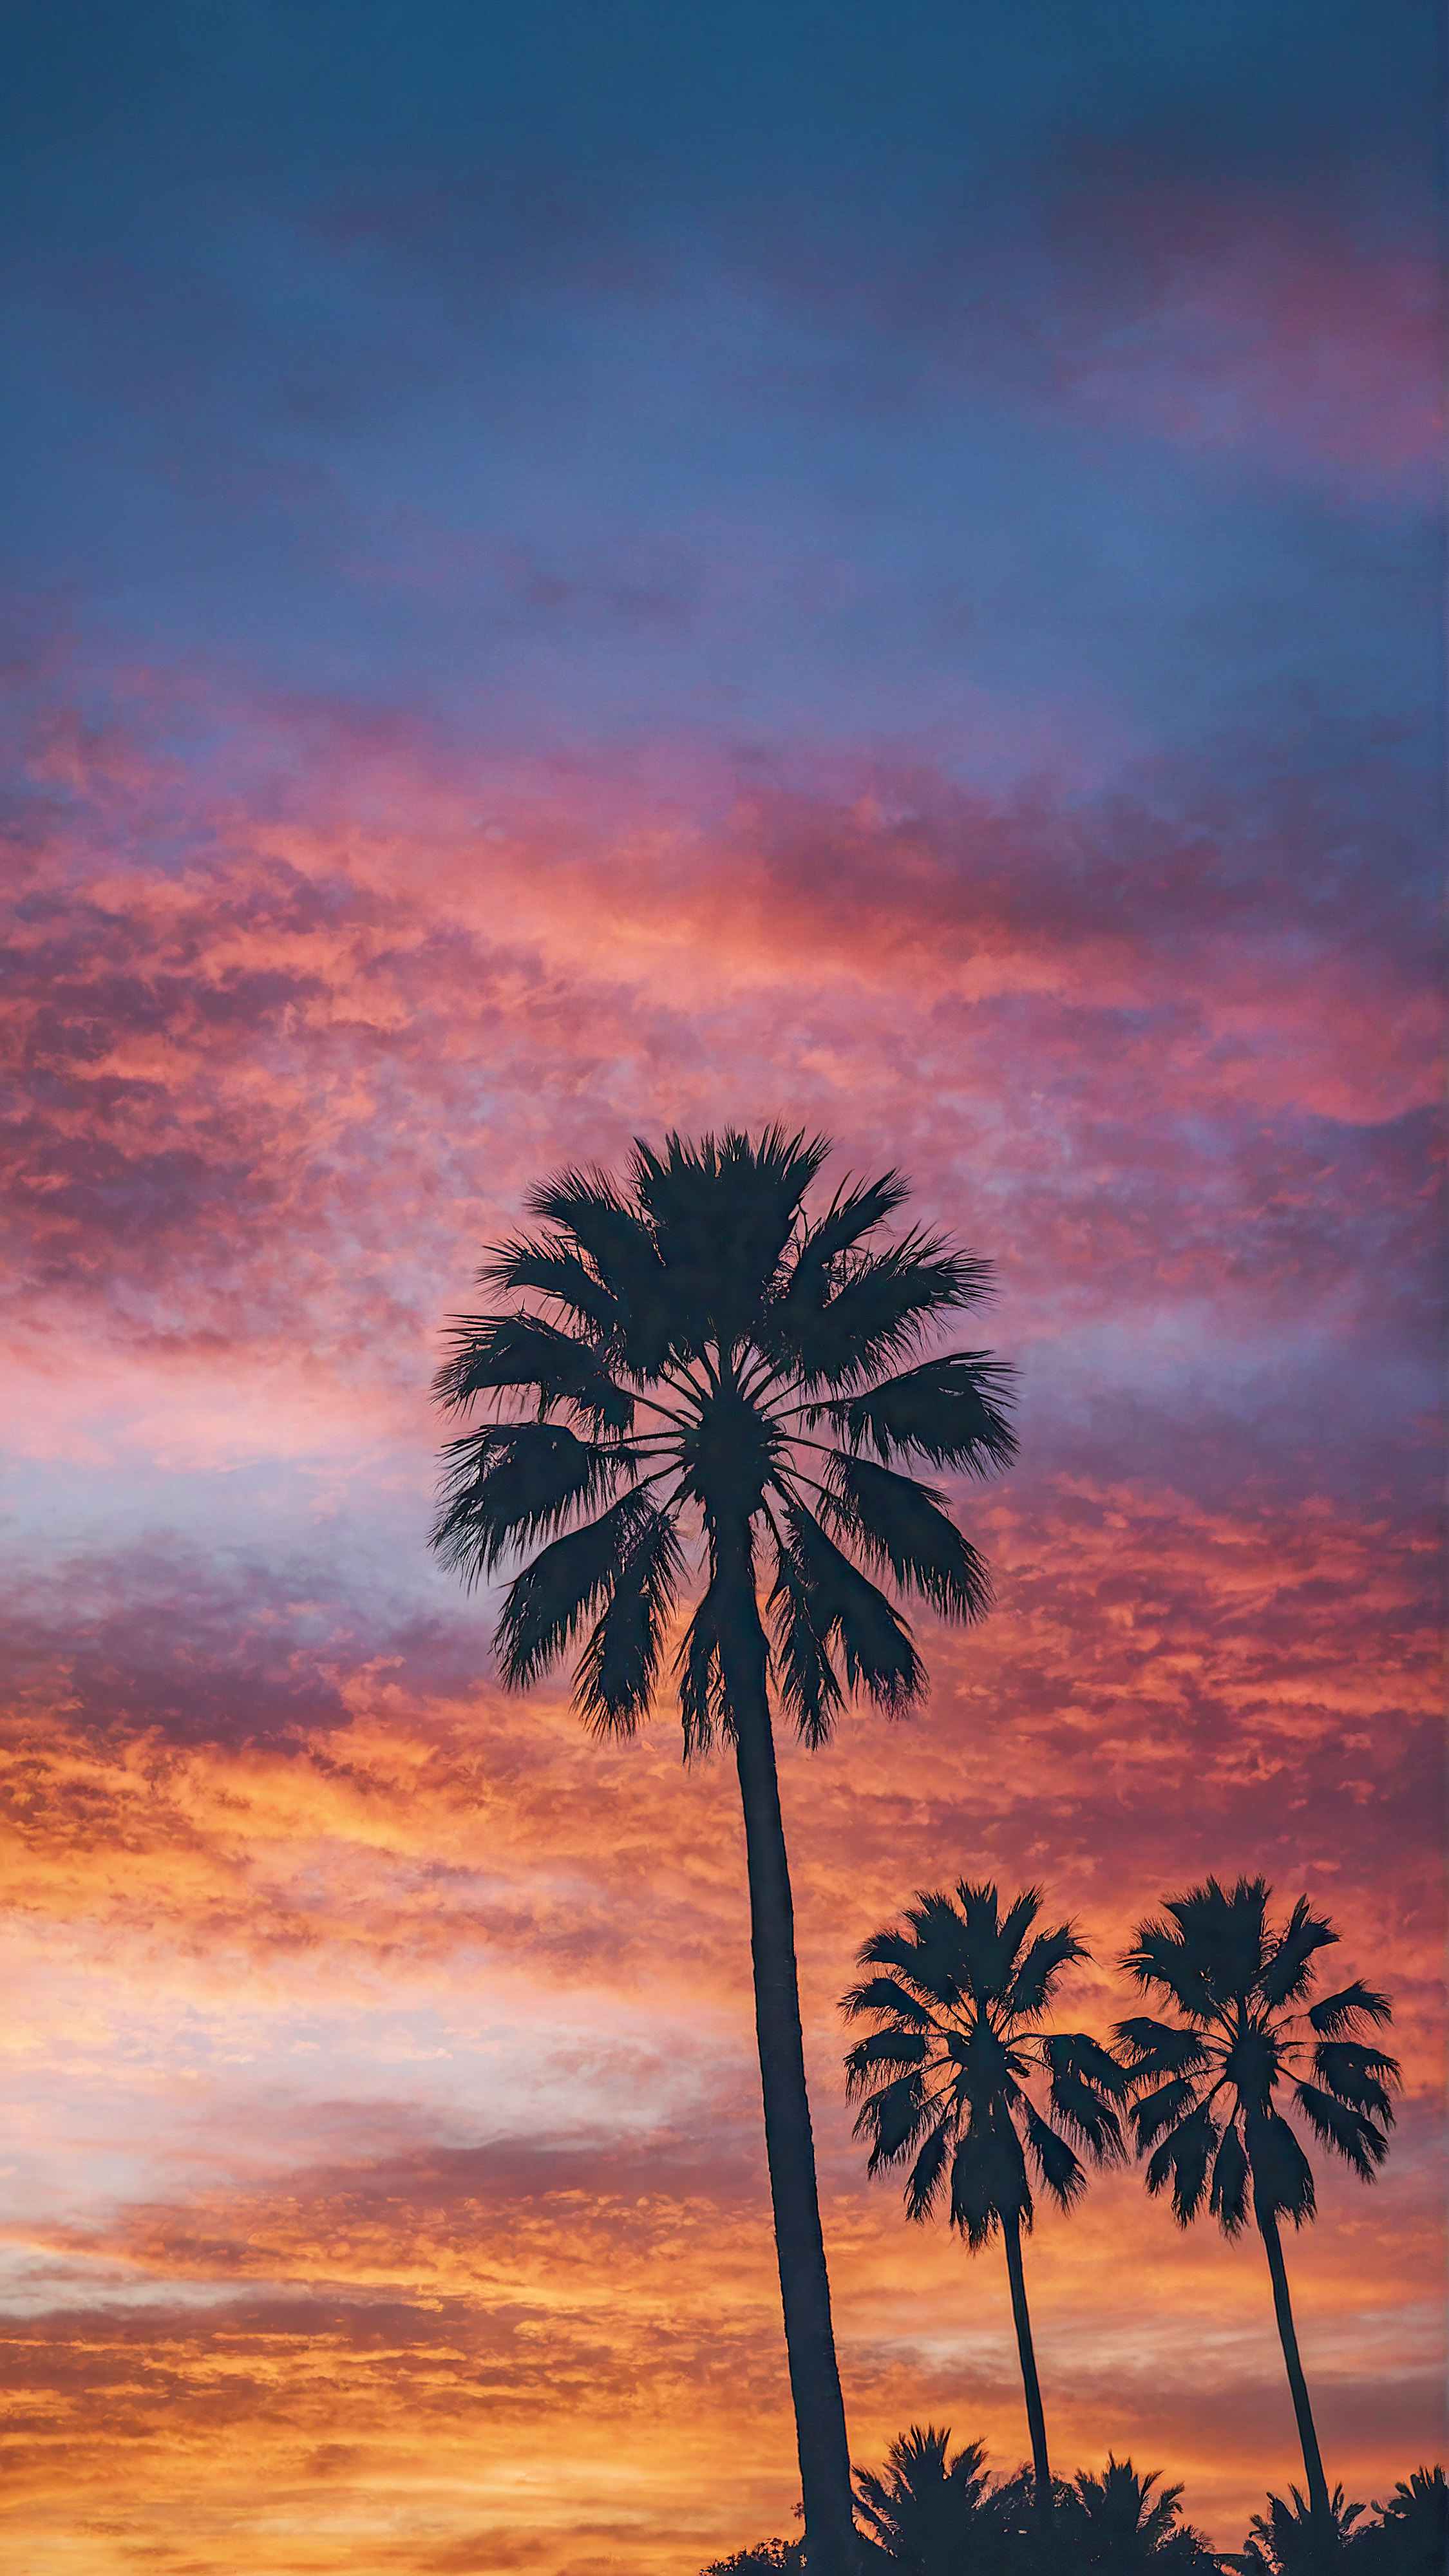 Capturez l'essence d'un coucher de soleil tropical avec notre économiseur d'écran pour iPhone, présentant plusieurs palmiers se détachant sur un ciel vibrant du soir. Votre appareil sera une fenêtre sur le paradis.